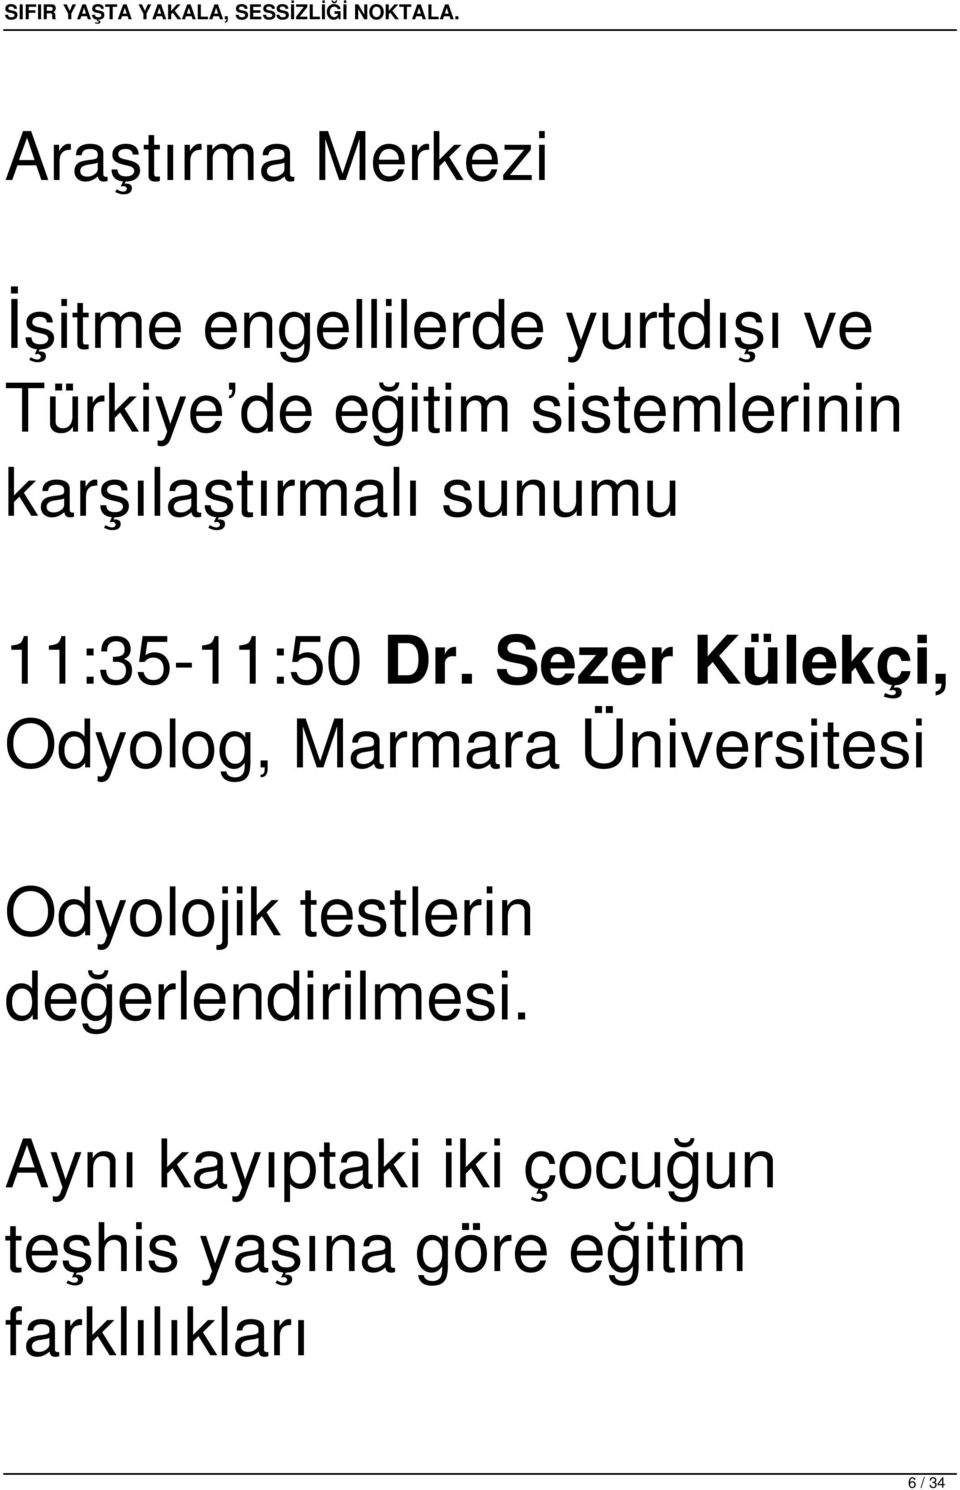 Sezer Külekçi, Odyolog, Marmara Üniversitesi Odyolojik testlerin